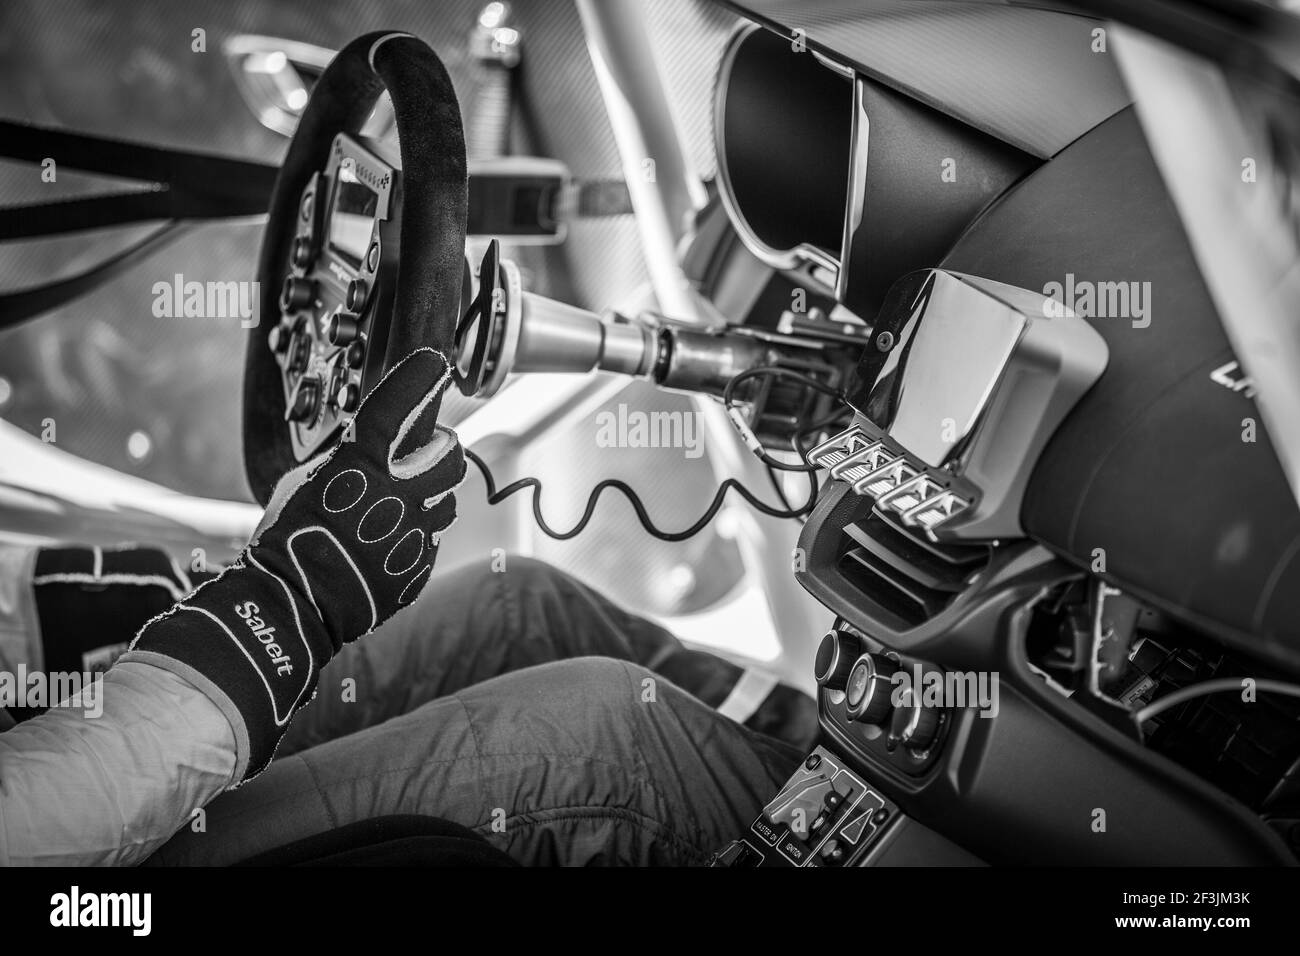 MELA Jean-Baptiste (fra), AUTOSPORT GP, ritratto durante la Coppa Europa Alpina 2018 a Silverstone, Gran Bretagna, dal 31 agosto al 2 settembre - Foto Clemente Luck / DPPI Foto Stock